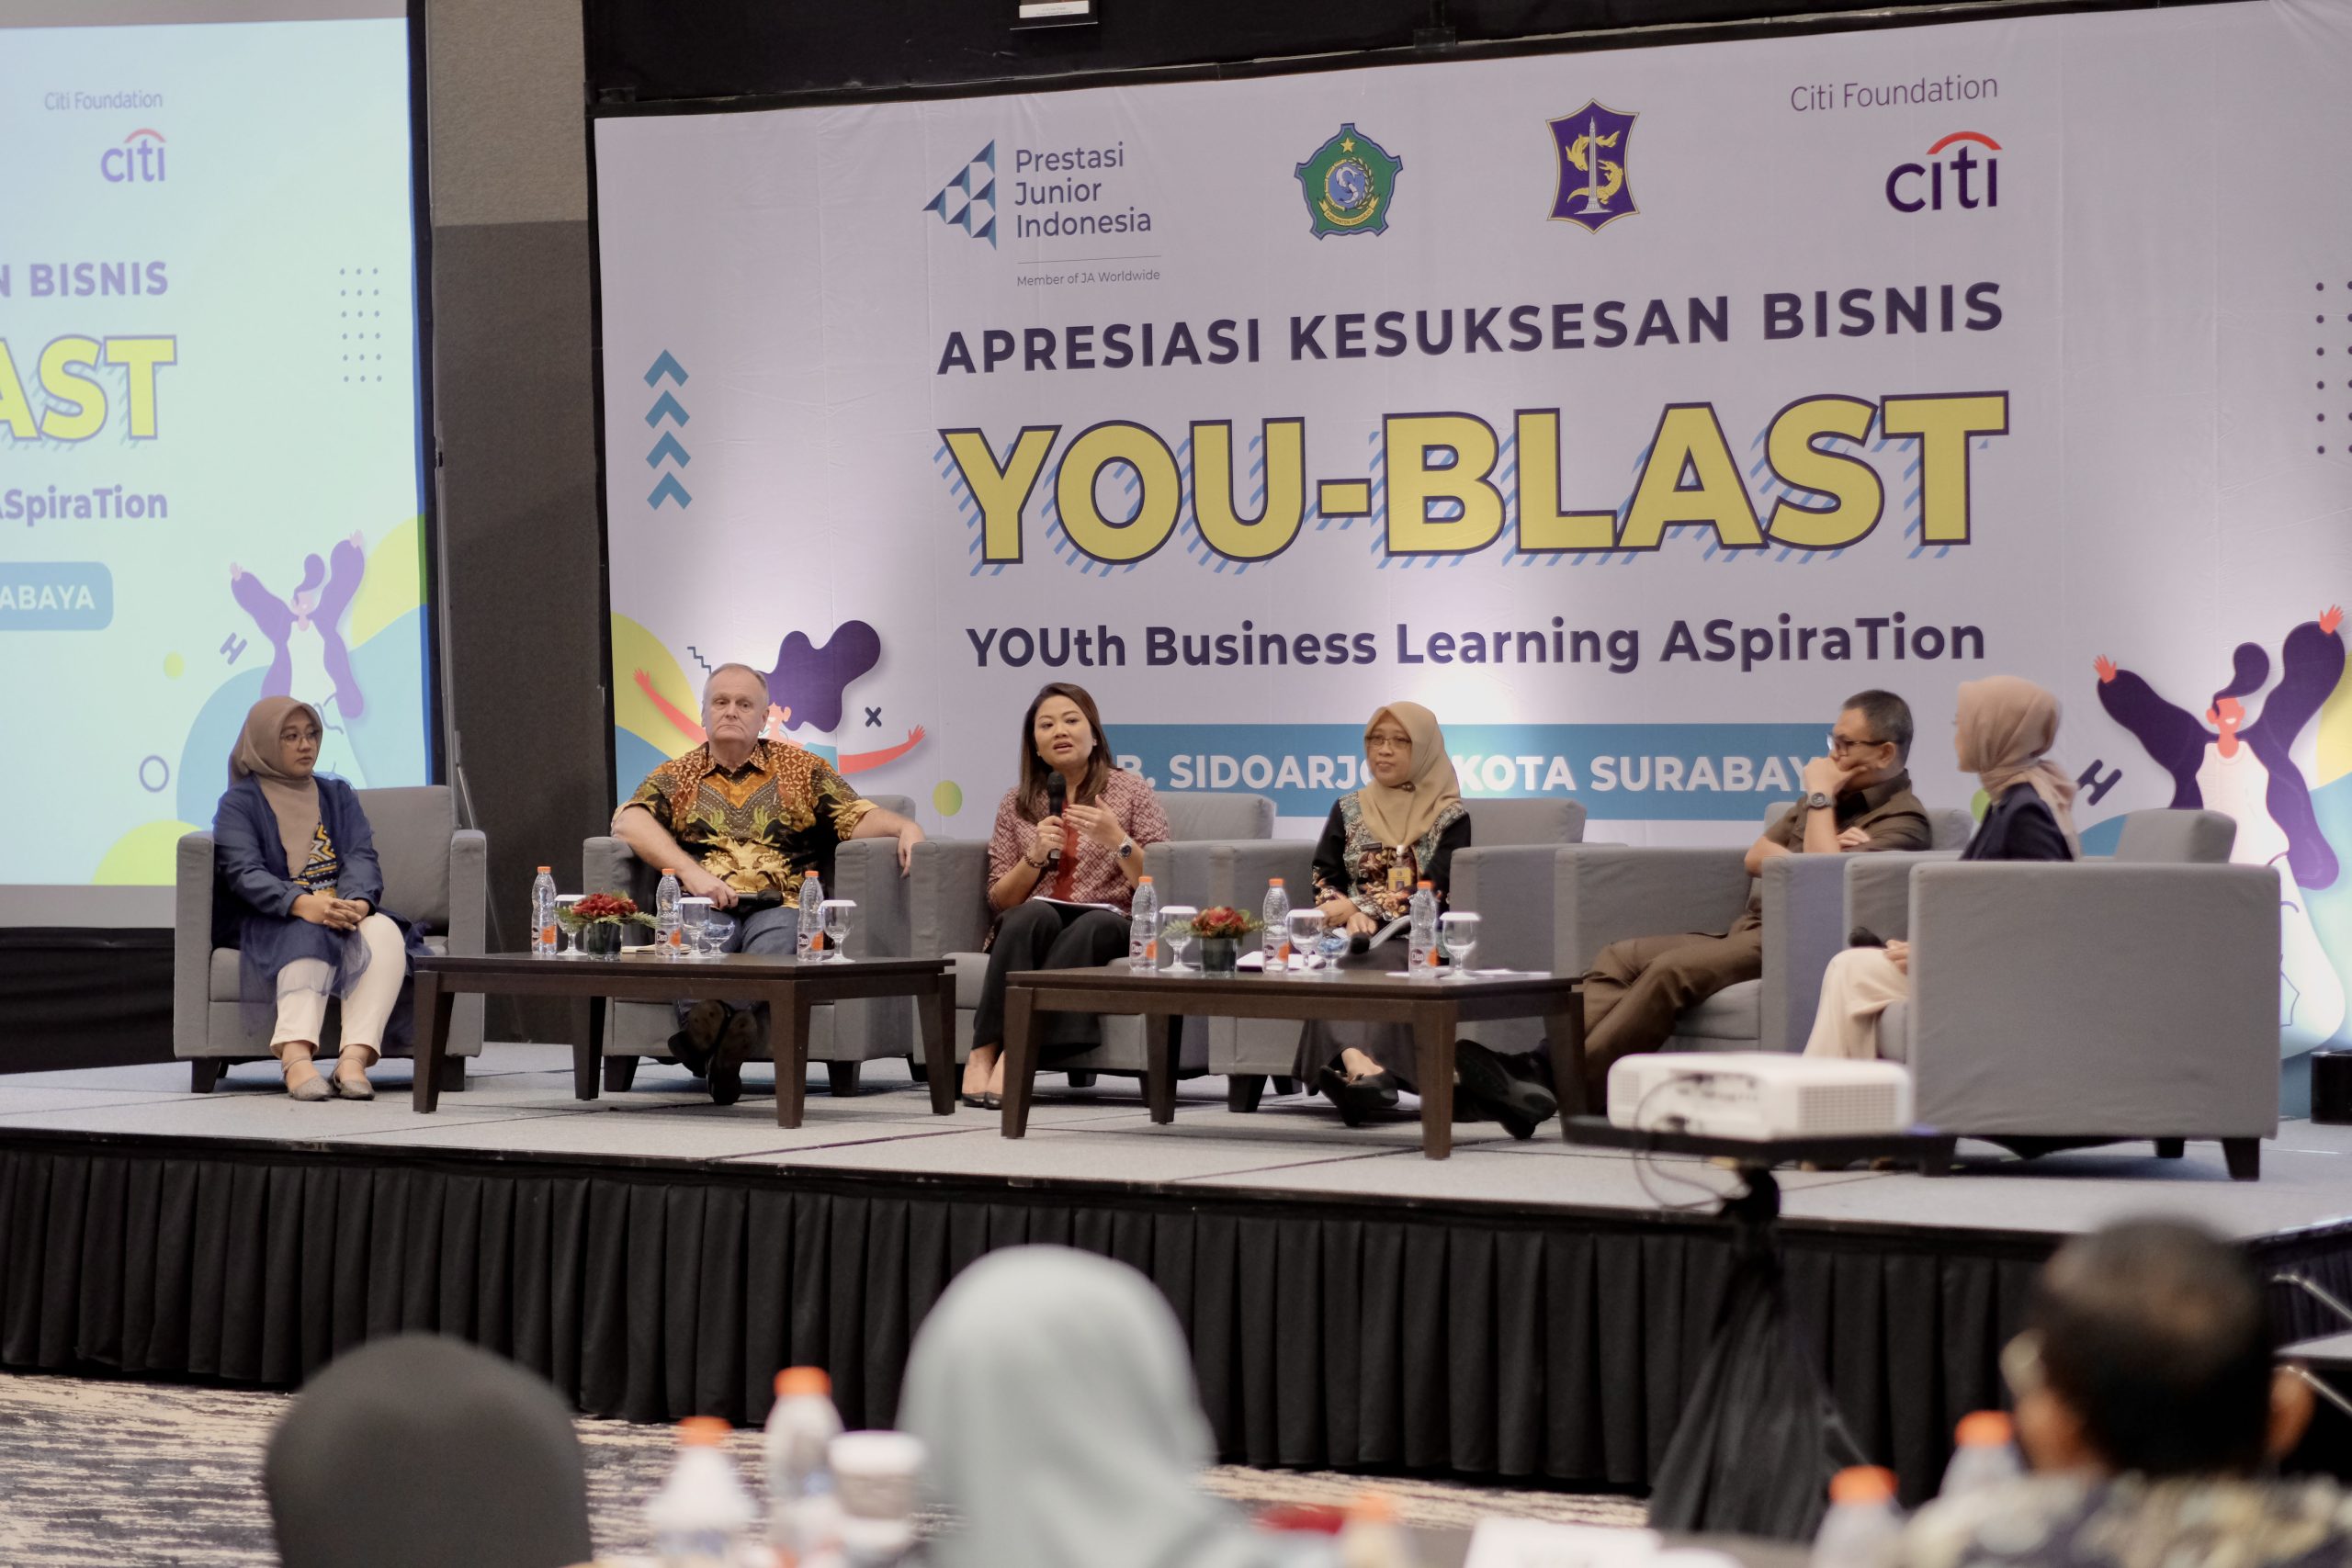 Sebanyak 100 lebih pelaku bisnis muda yang berasal dari wilayah Jawa Timur, Jawa Barat turut berpartisipasi dalam ajang pameran